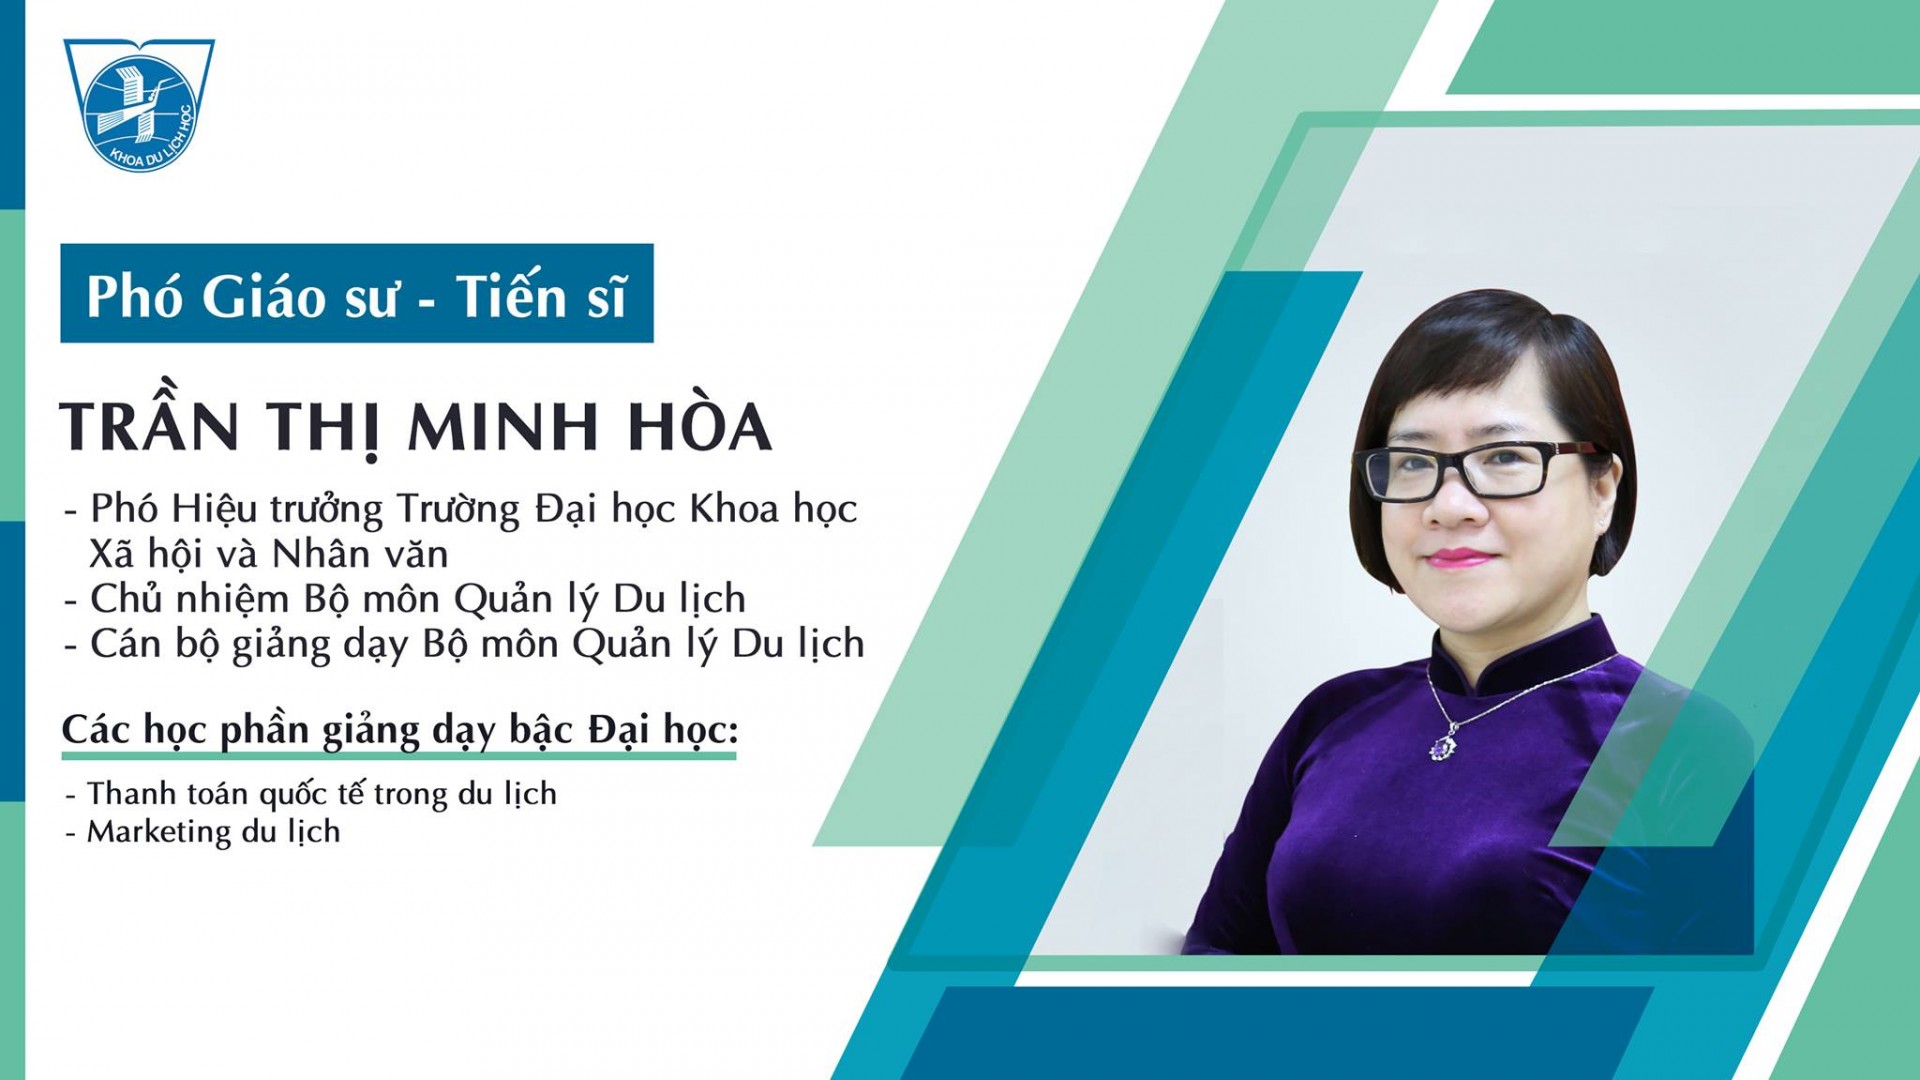 PGS.TS. Trần Thị Minh Hòa